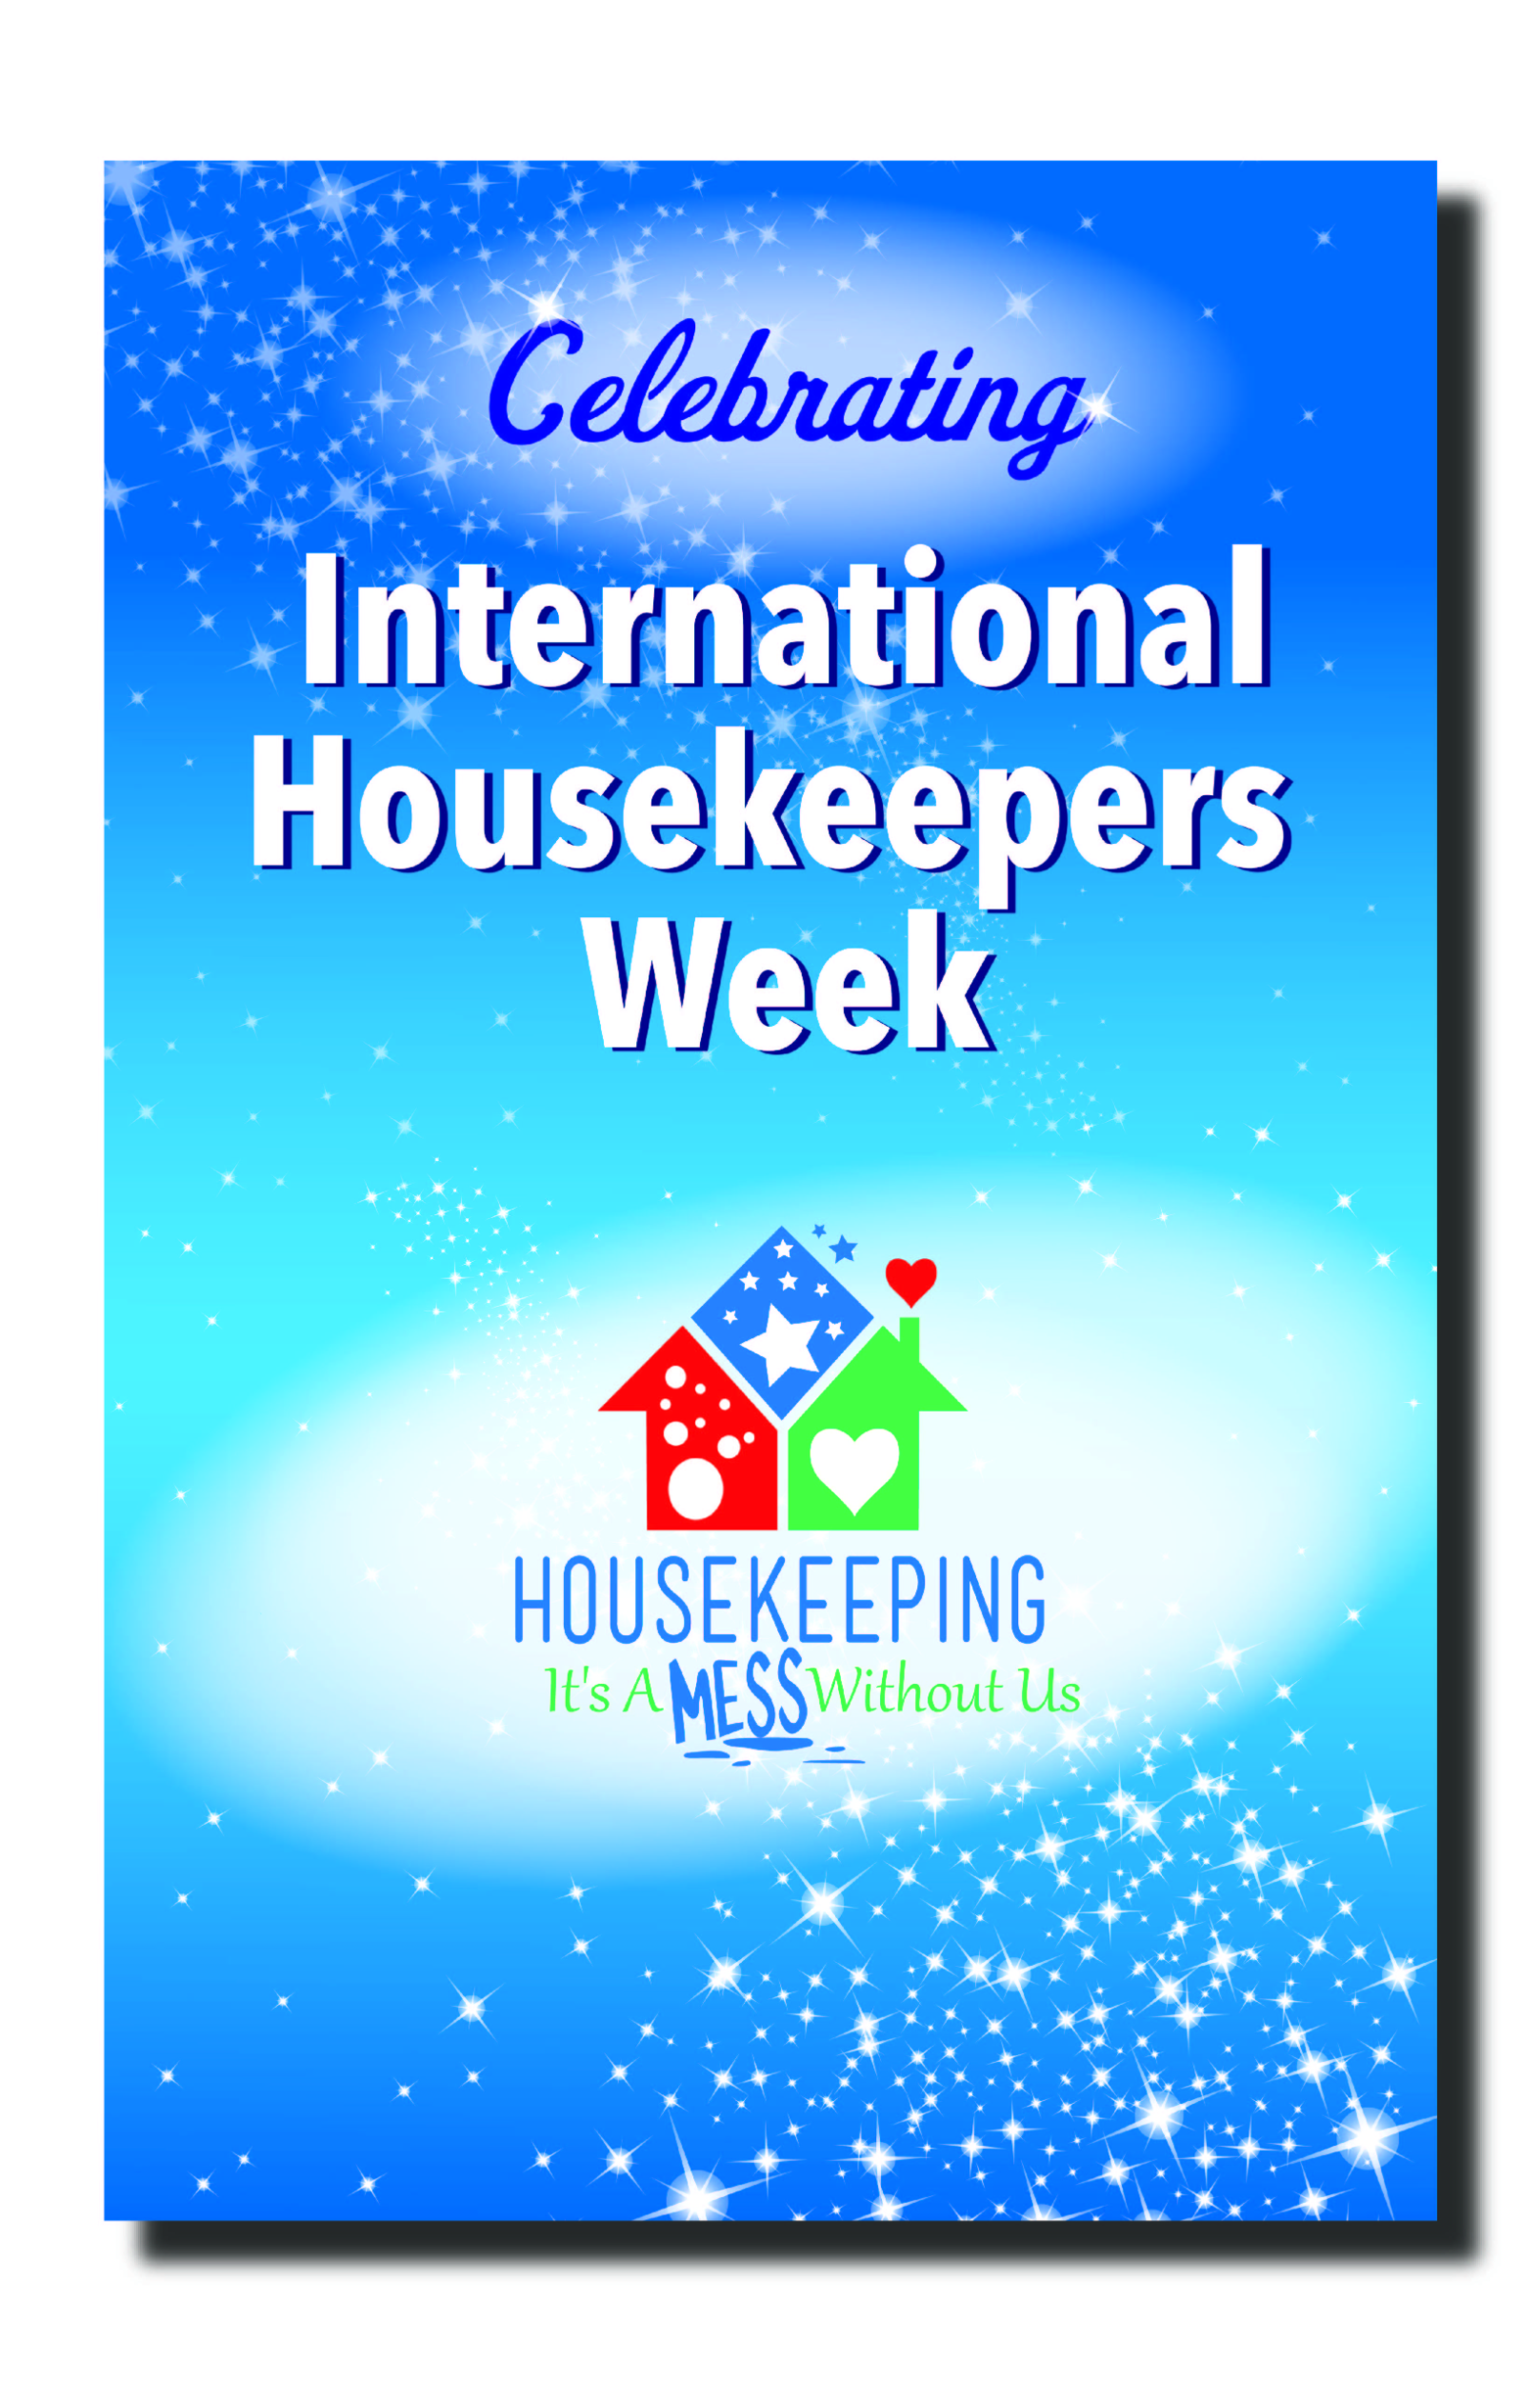 Housekeeping Week Poster 1687525230 0 